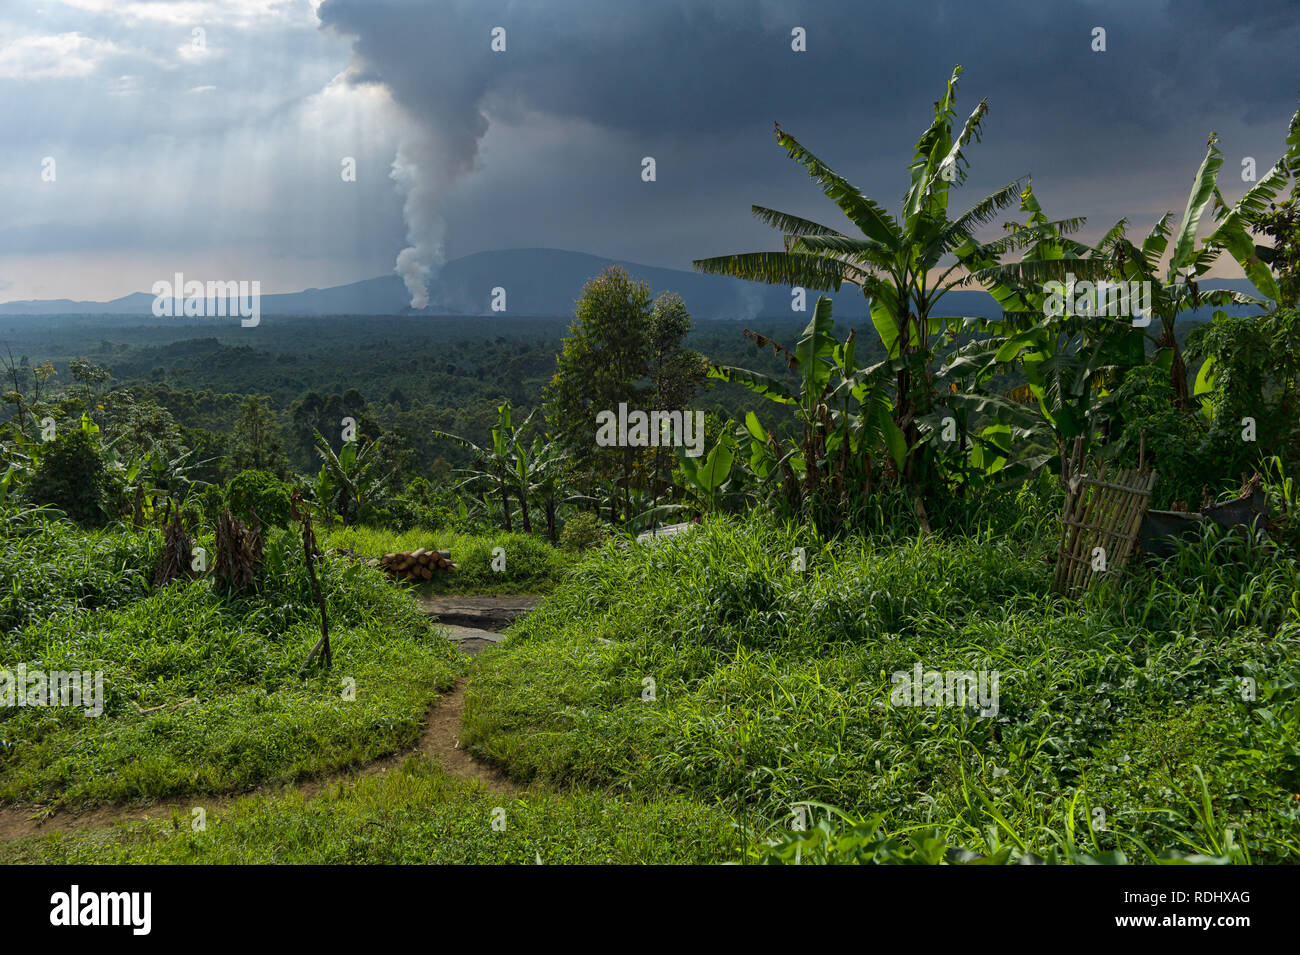 Nyamuragira, un vulcano attivo, esplode in background di un villaggio rurale all'interno del Parco nazionale di Virunga, Repubblica Democratica del Congo. Foto Stock